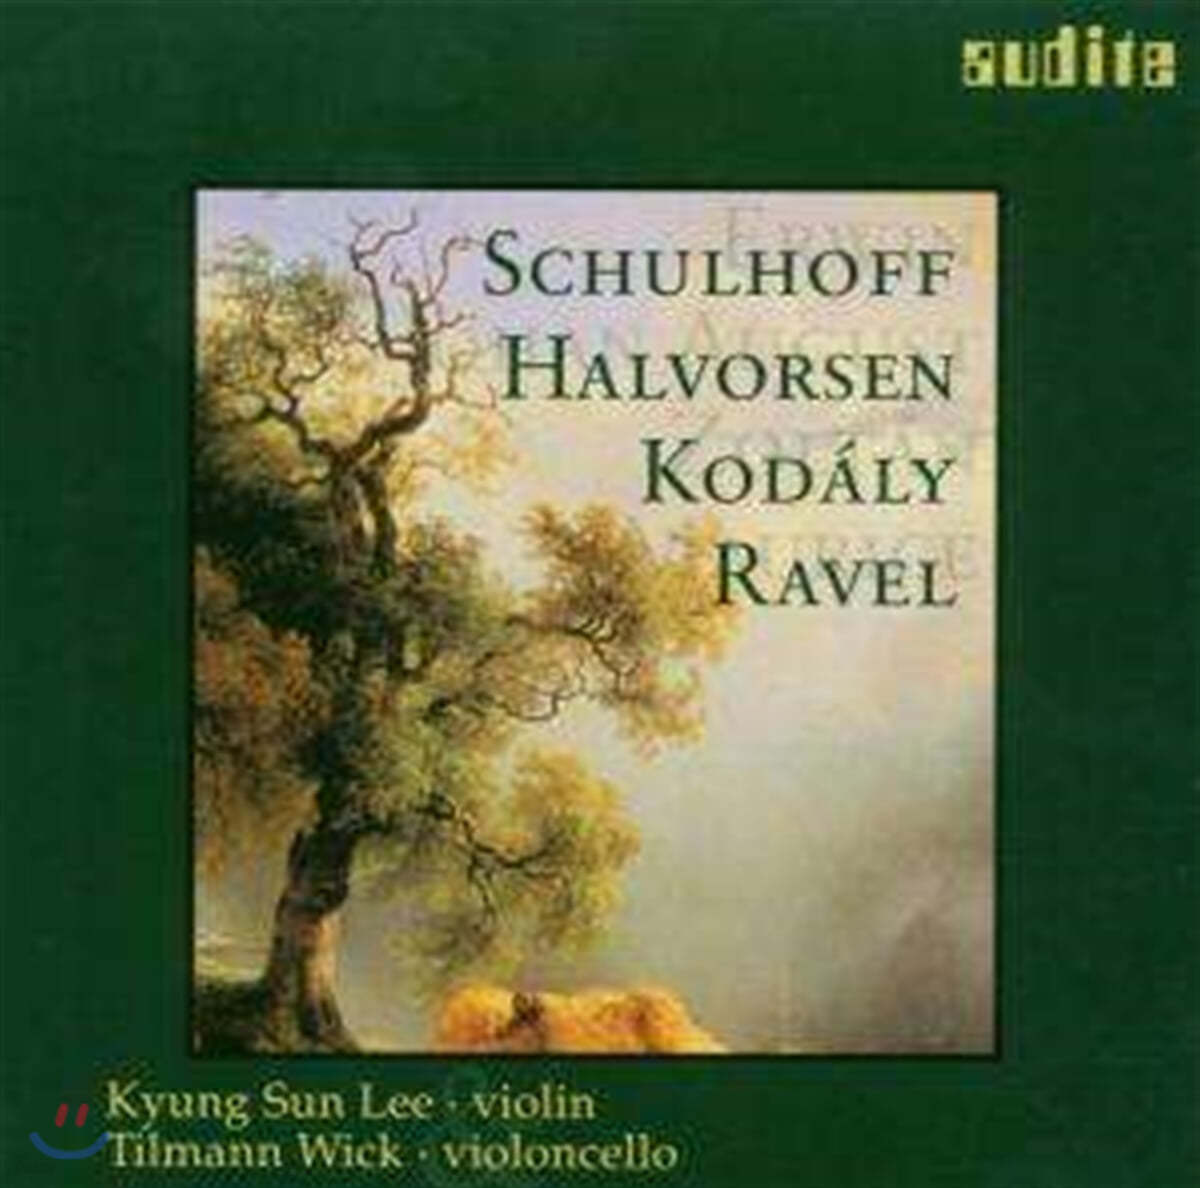 이경신 슐호프 / 할보르센 / 코다이 / 라벨: 바이올린과 첼로를 위한 이중주 외 (Schulhoff / Halvorsen / Kodaly / Ravel : Duo For Violin and Cello) 